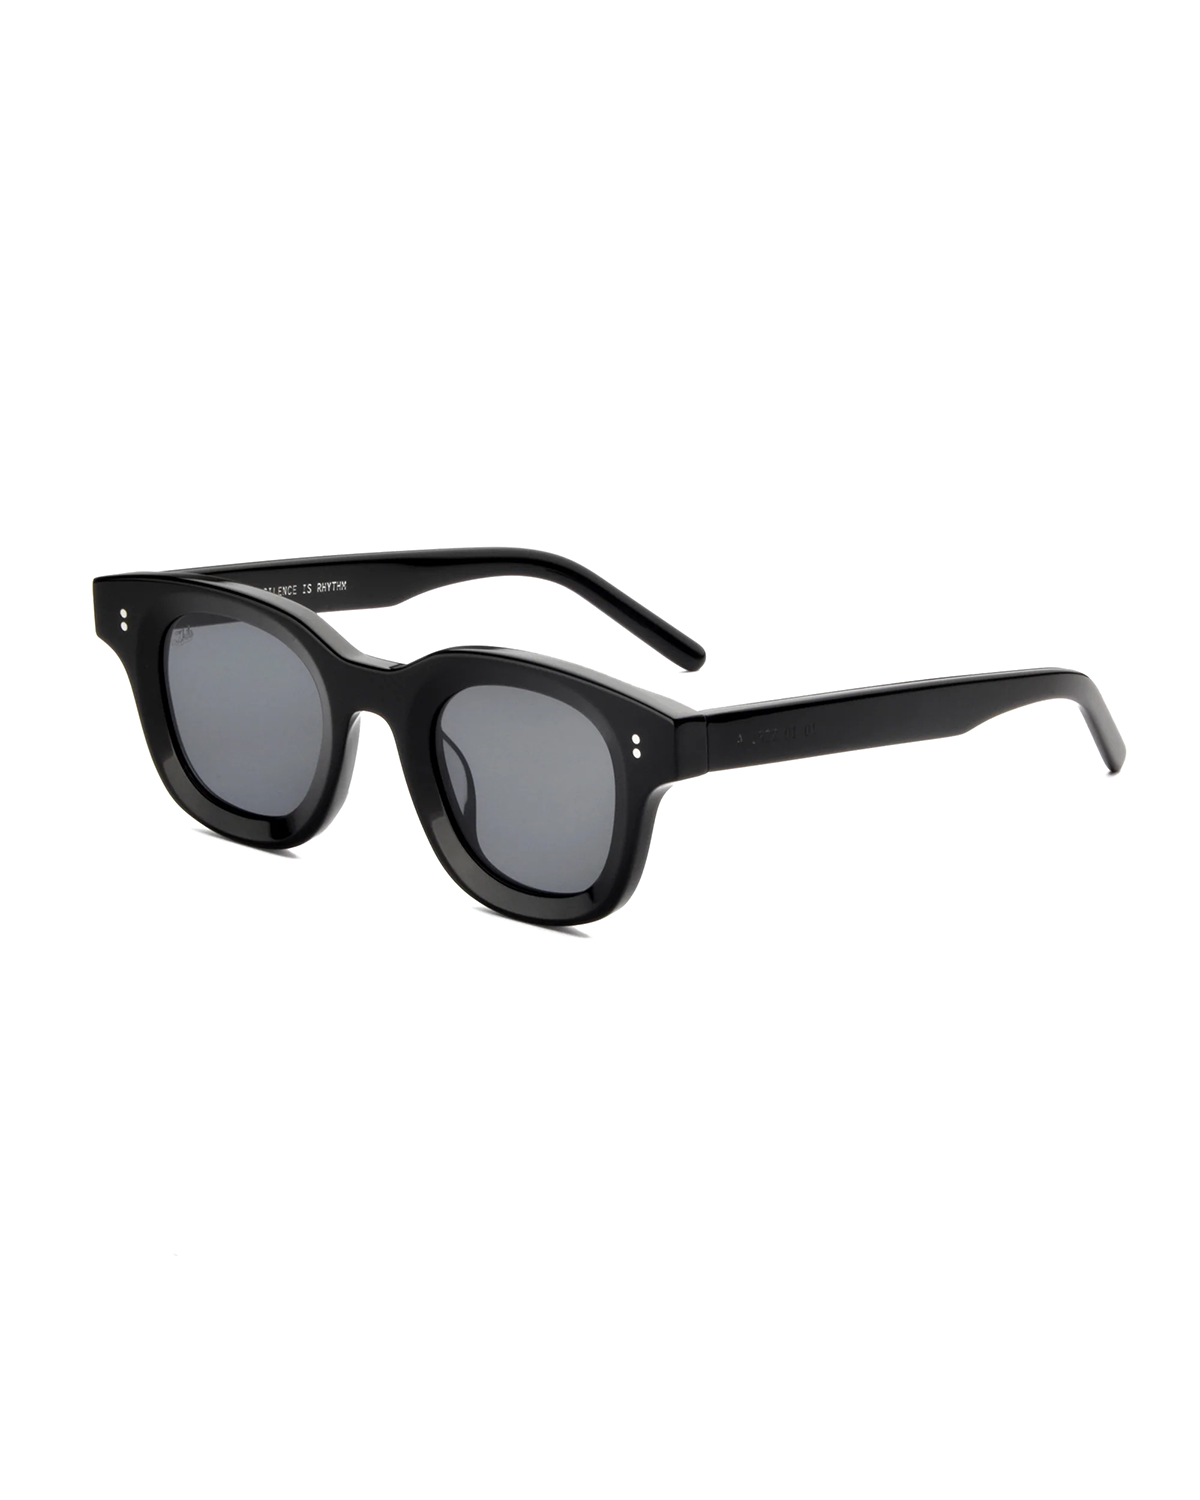 Apollo Sunglasses Black